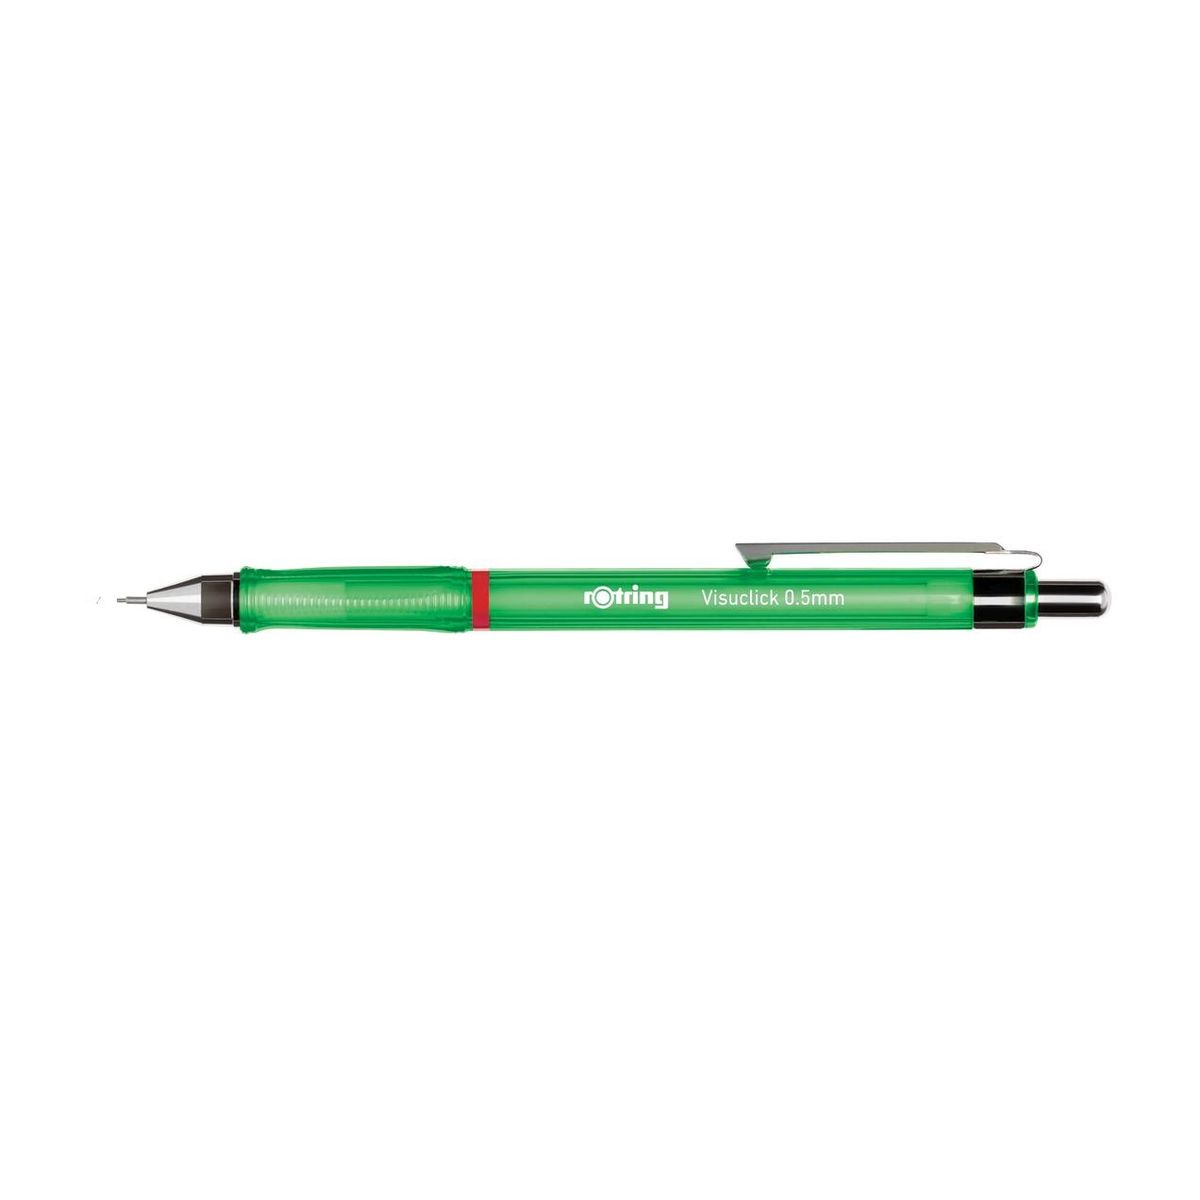 Ołówek automatyczny Rotring Visuclick 0,5mm (2089091)